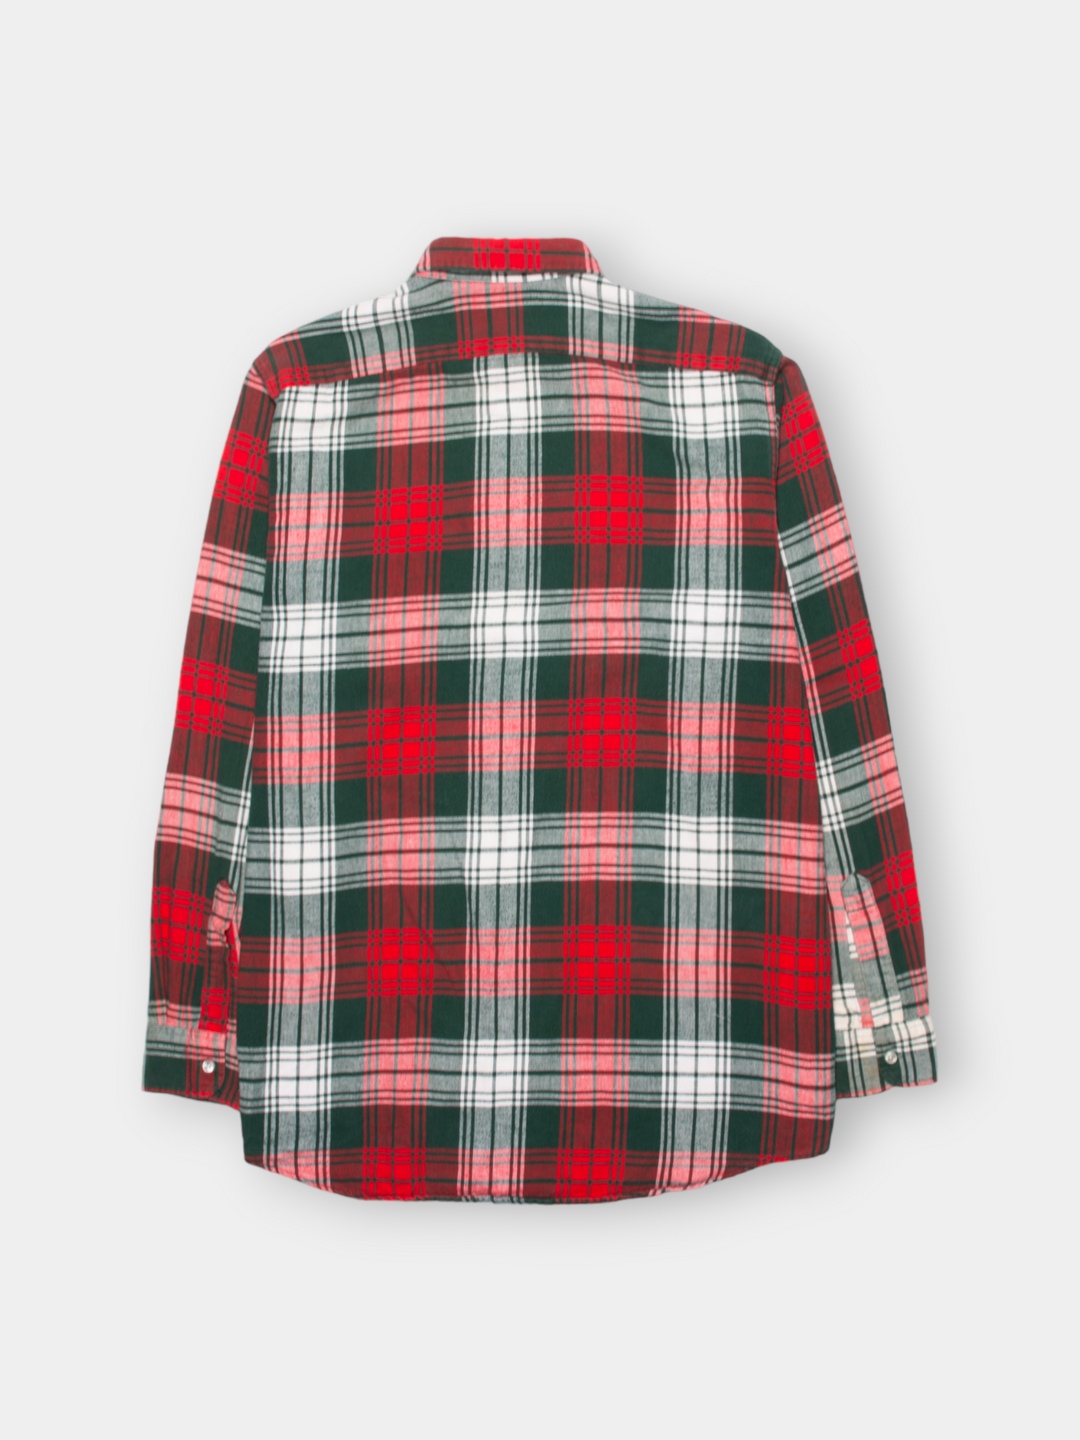 90s L.L. Bean Flannel Shirt (L)